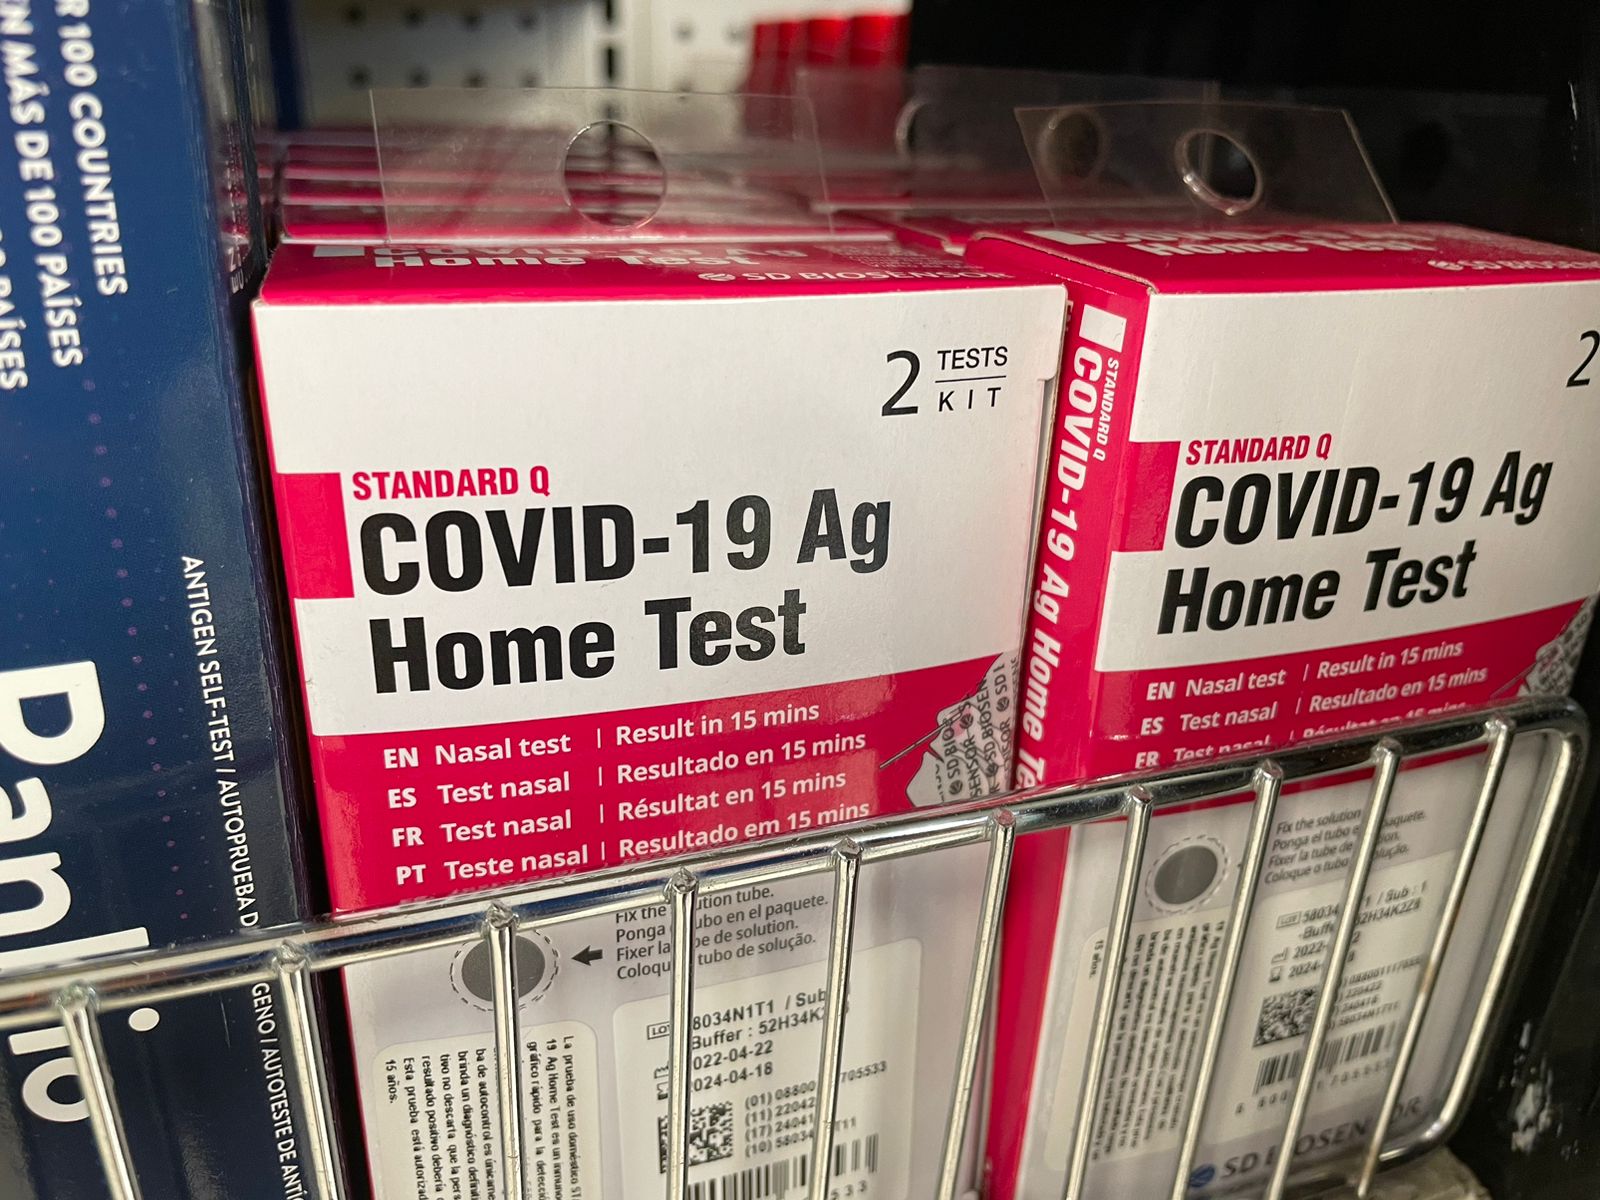 Pruebas de covid-19 están agotadas en todas las farmacias del país